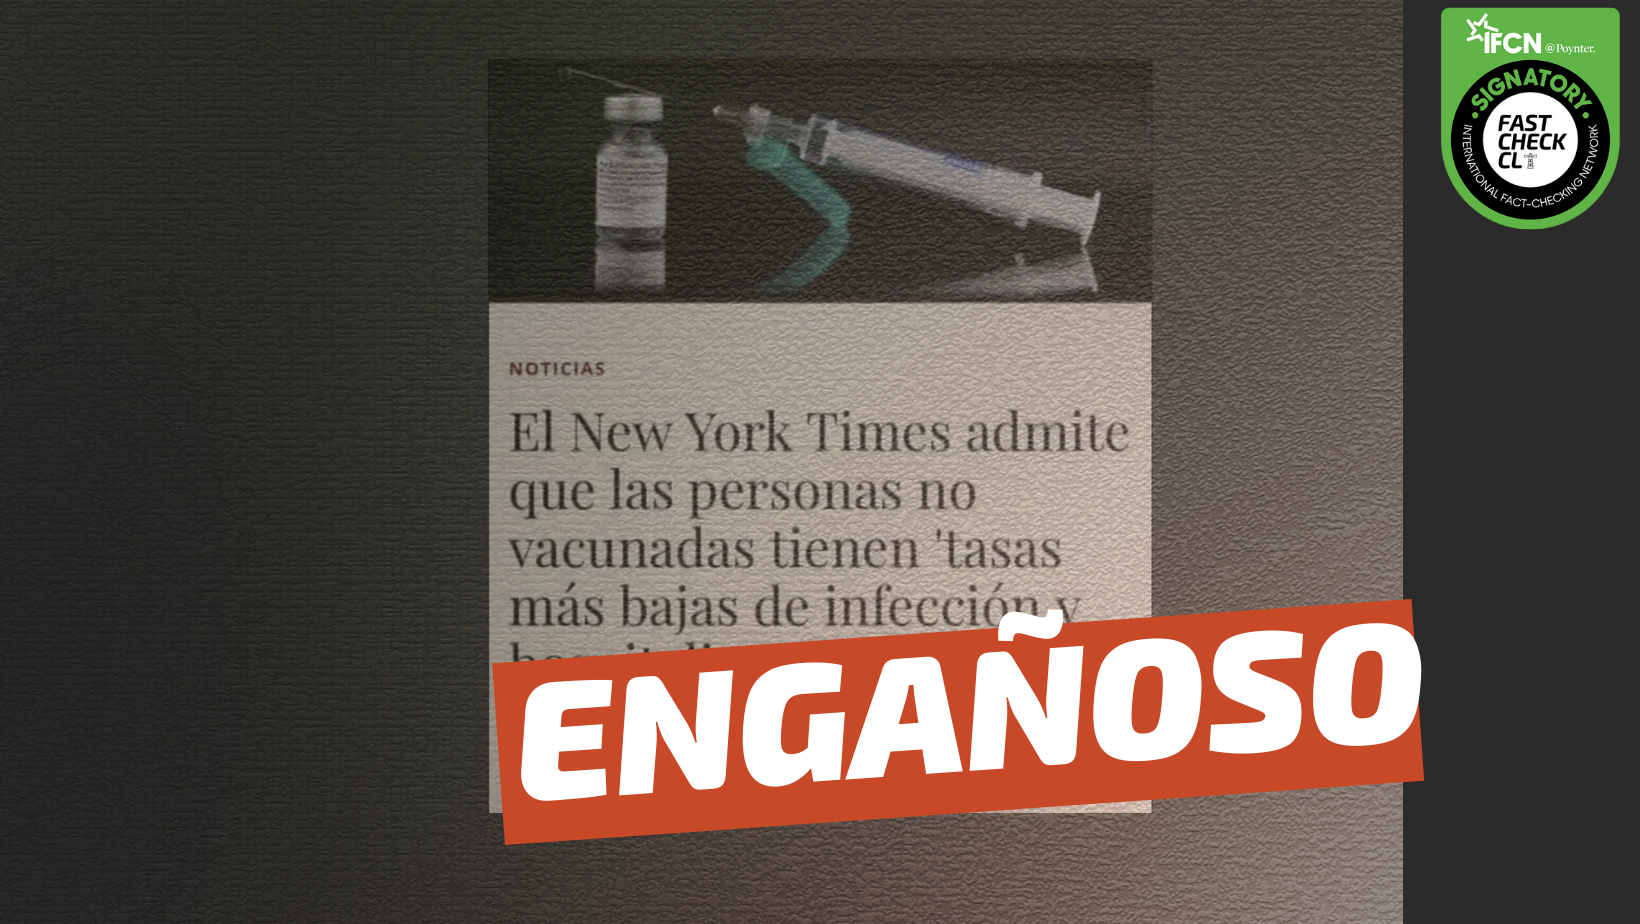 Read more about the article “El New York Times admitió que las personas no vacunadas tienen ‘tasas más bajas de infección y hospitalización’ de covid-19 que las personas vacunadas”: #Engañoso